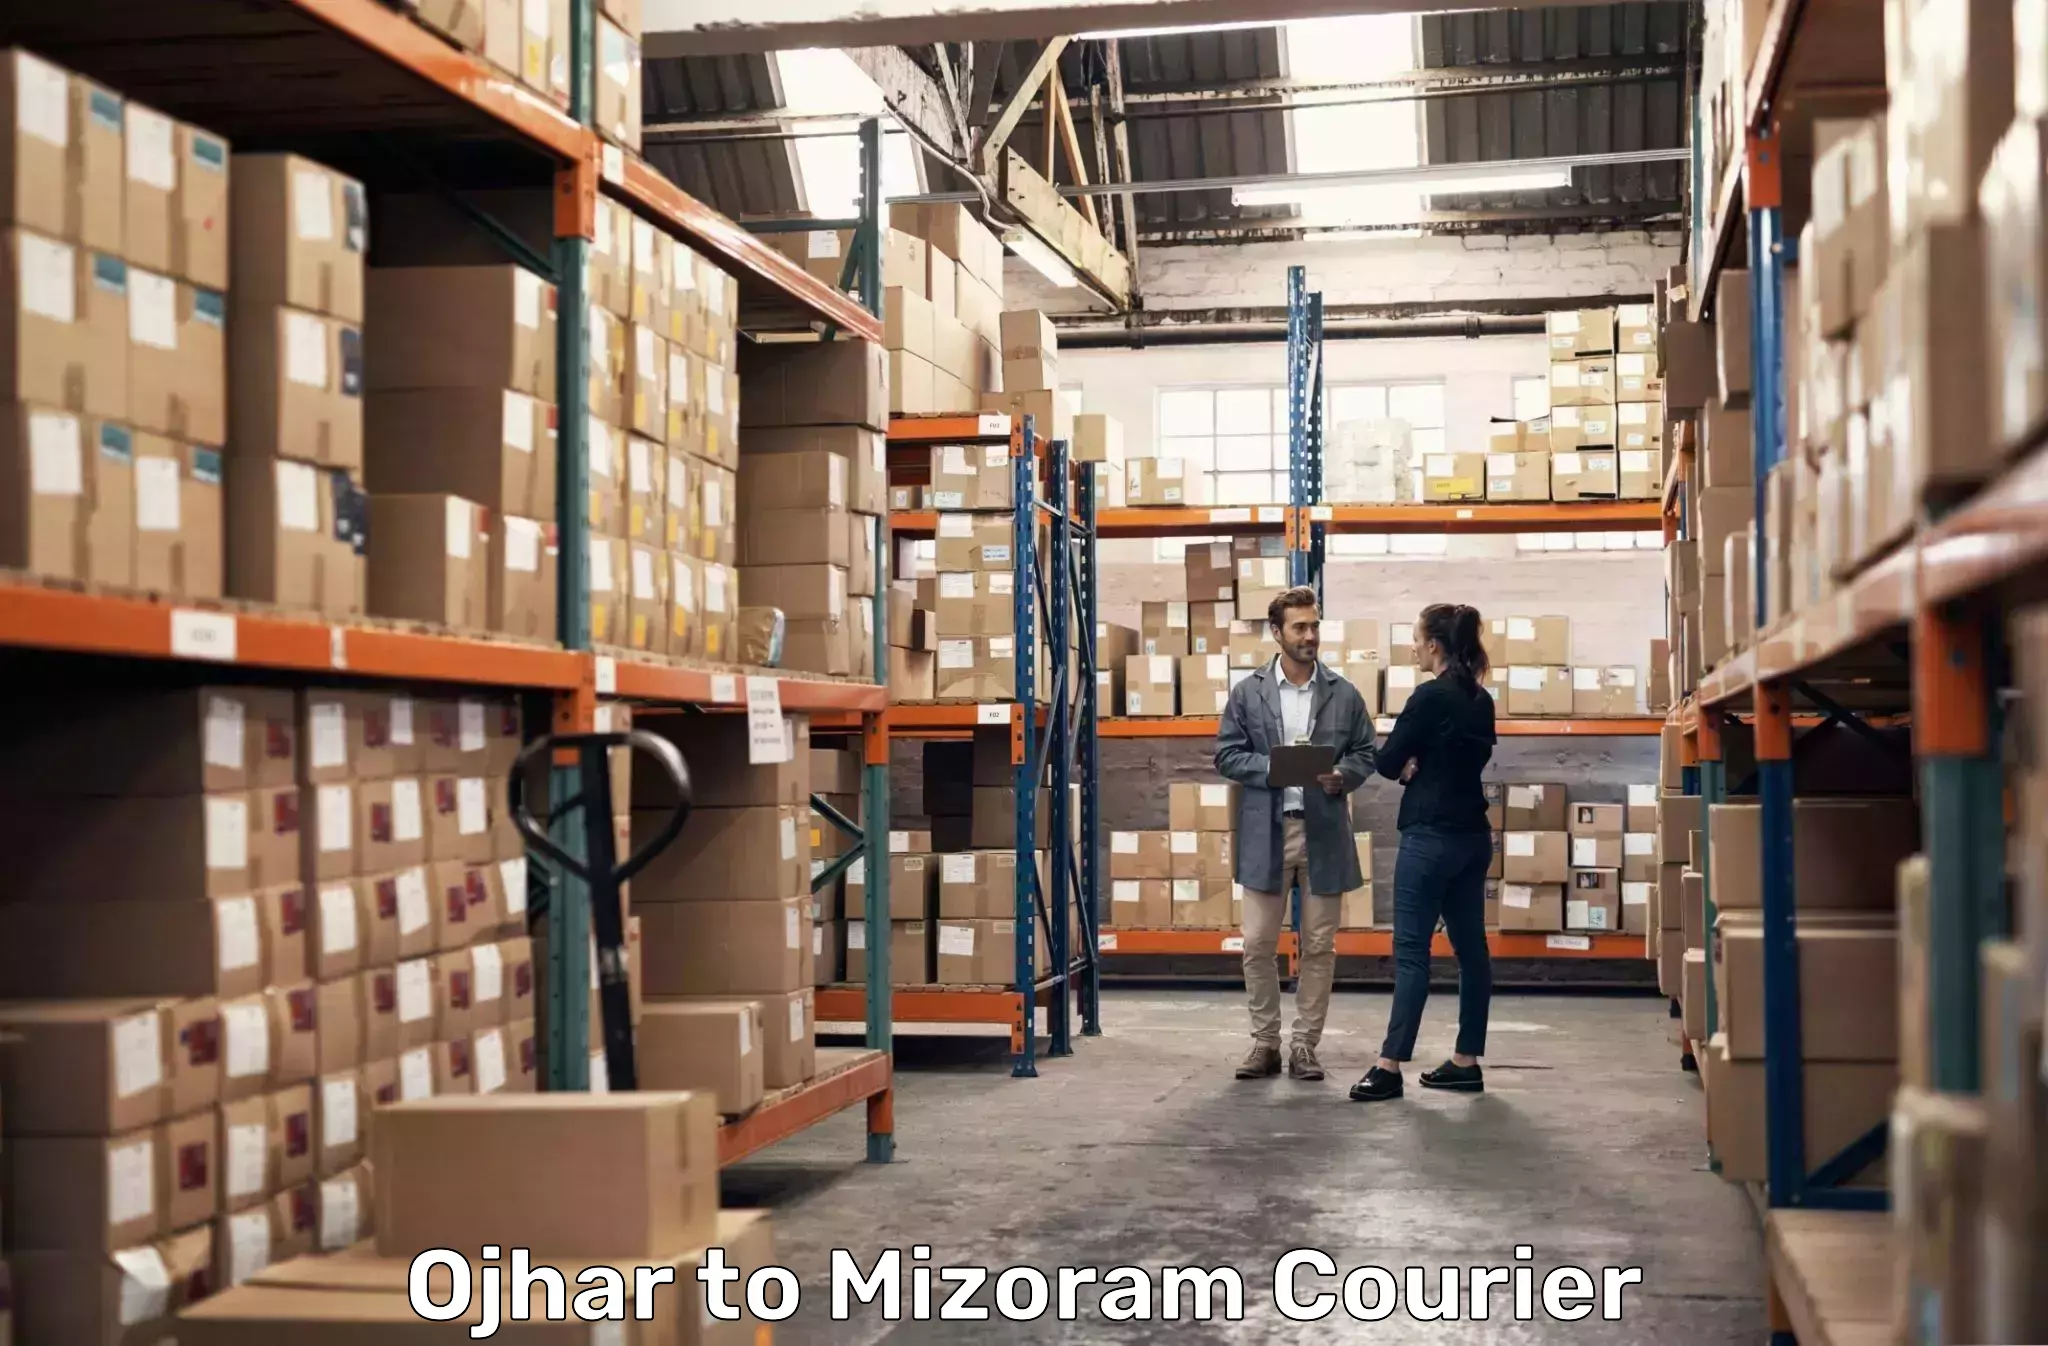 Global parcel delivery Ojhar to Mizoram